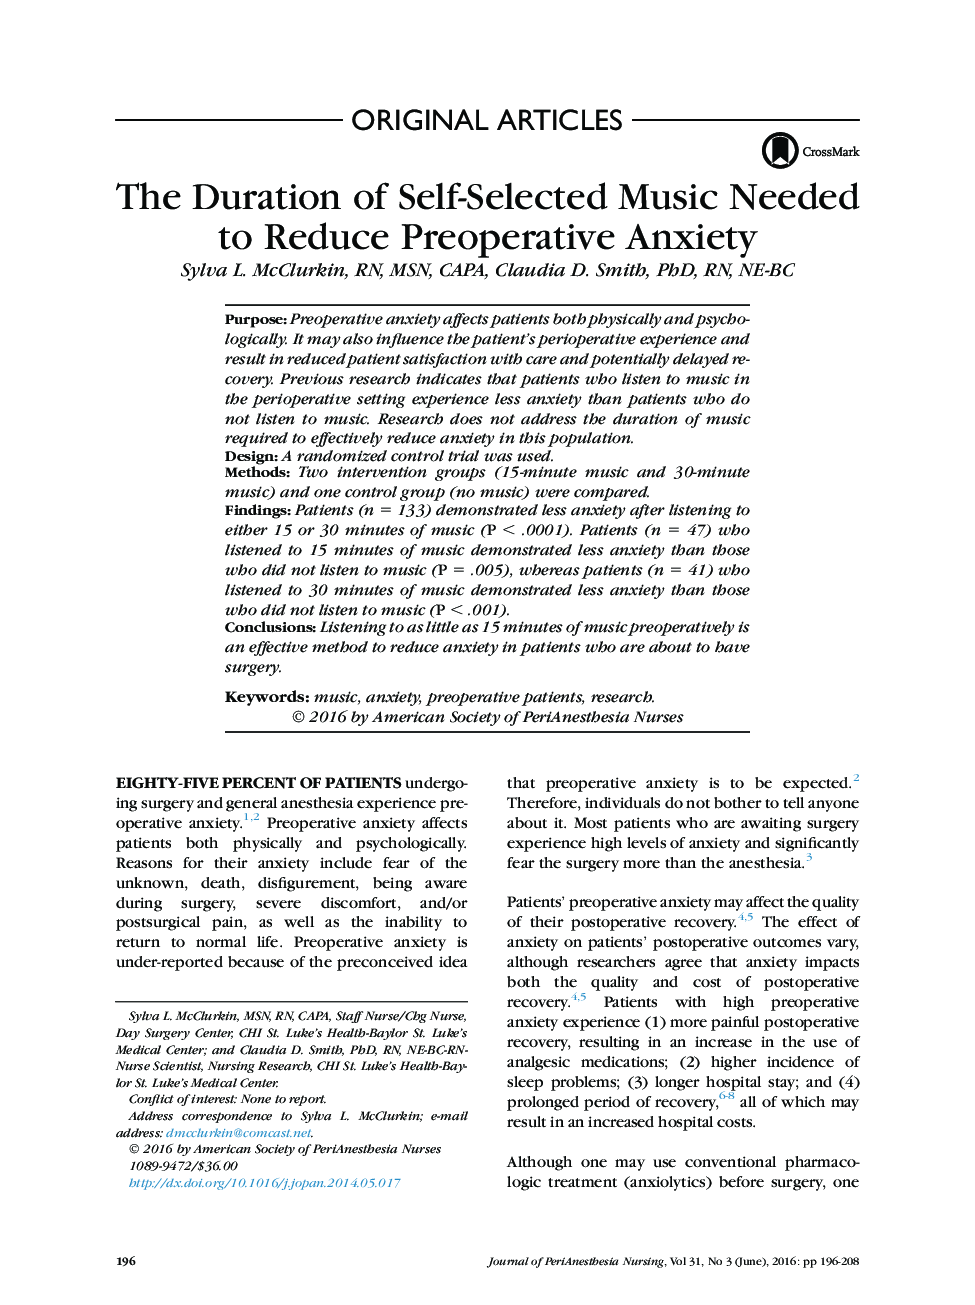 مدت زمان موزیک خودانتخابی مورد نیاز برای کاهش اضطراب قبل از عمل